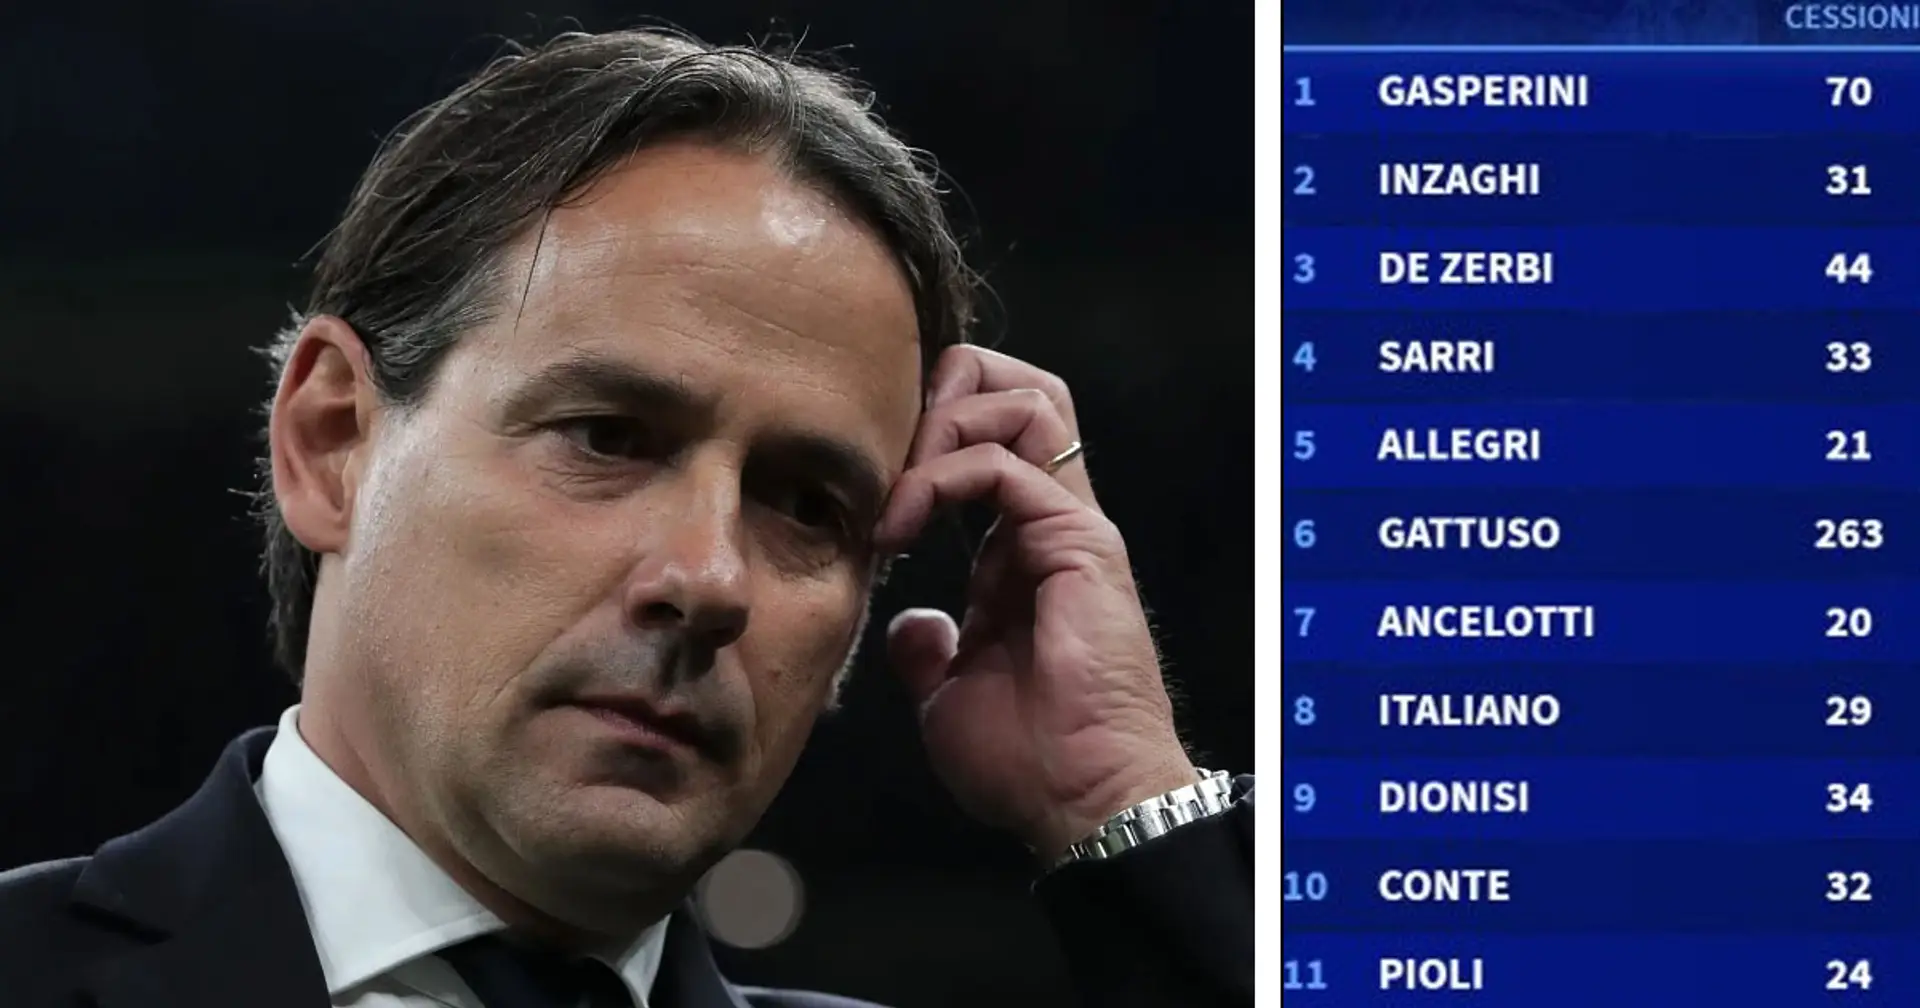 La classifica degli allenatori che fanno guadagnare di più ai propri club: Inzaghi sul podio